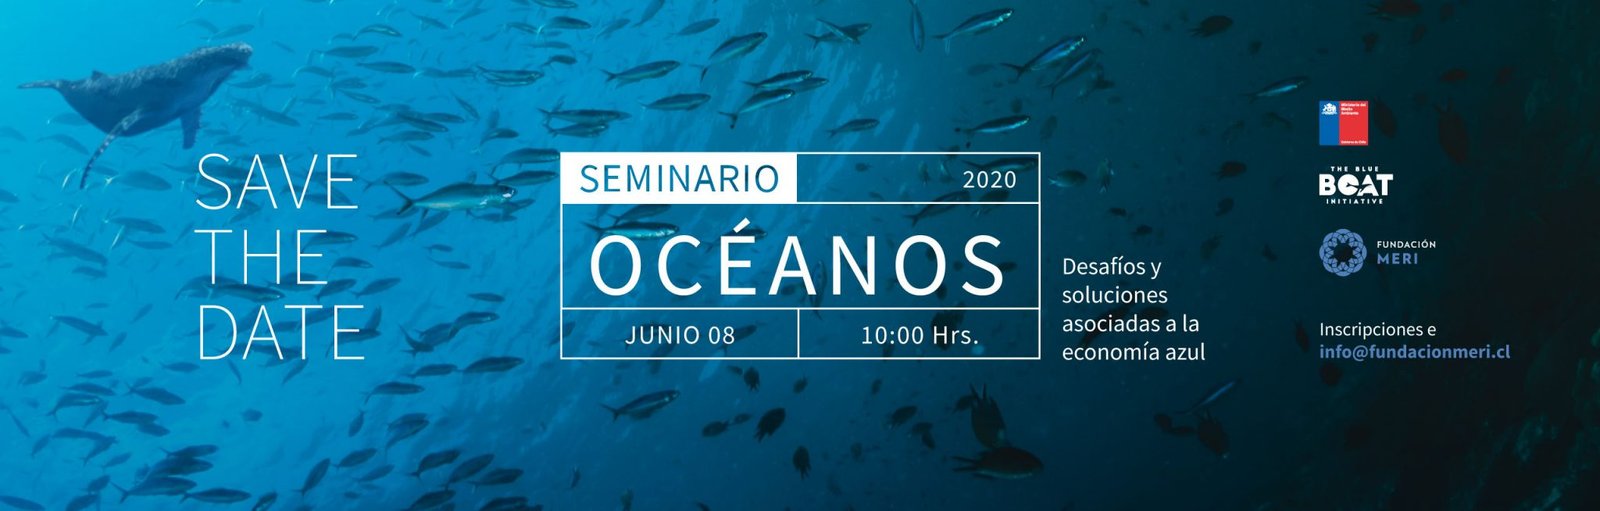 seminario-oceanos-desafios-y-soluciones-asociadas-a-la-economia-azul